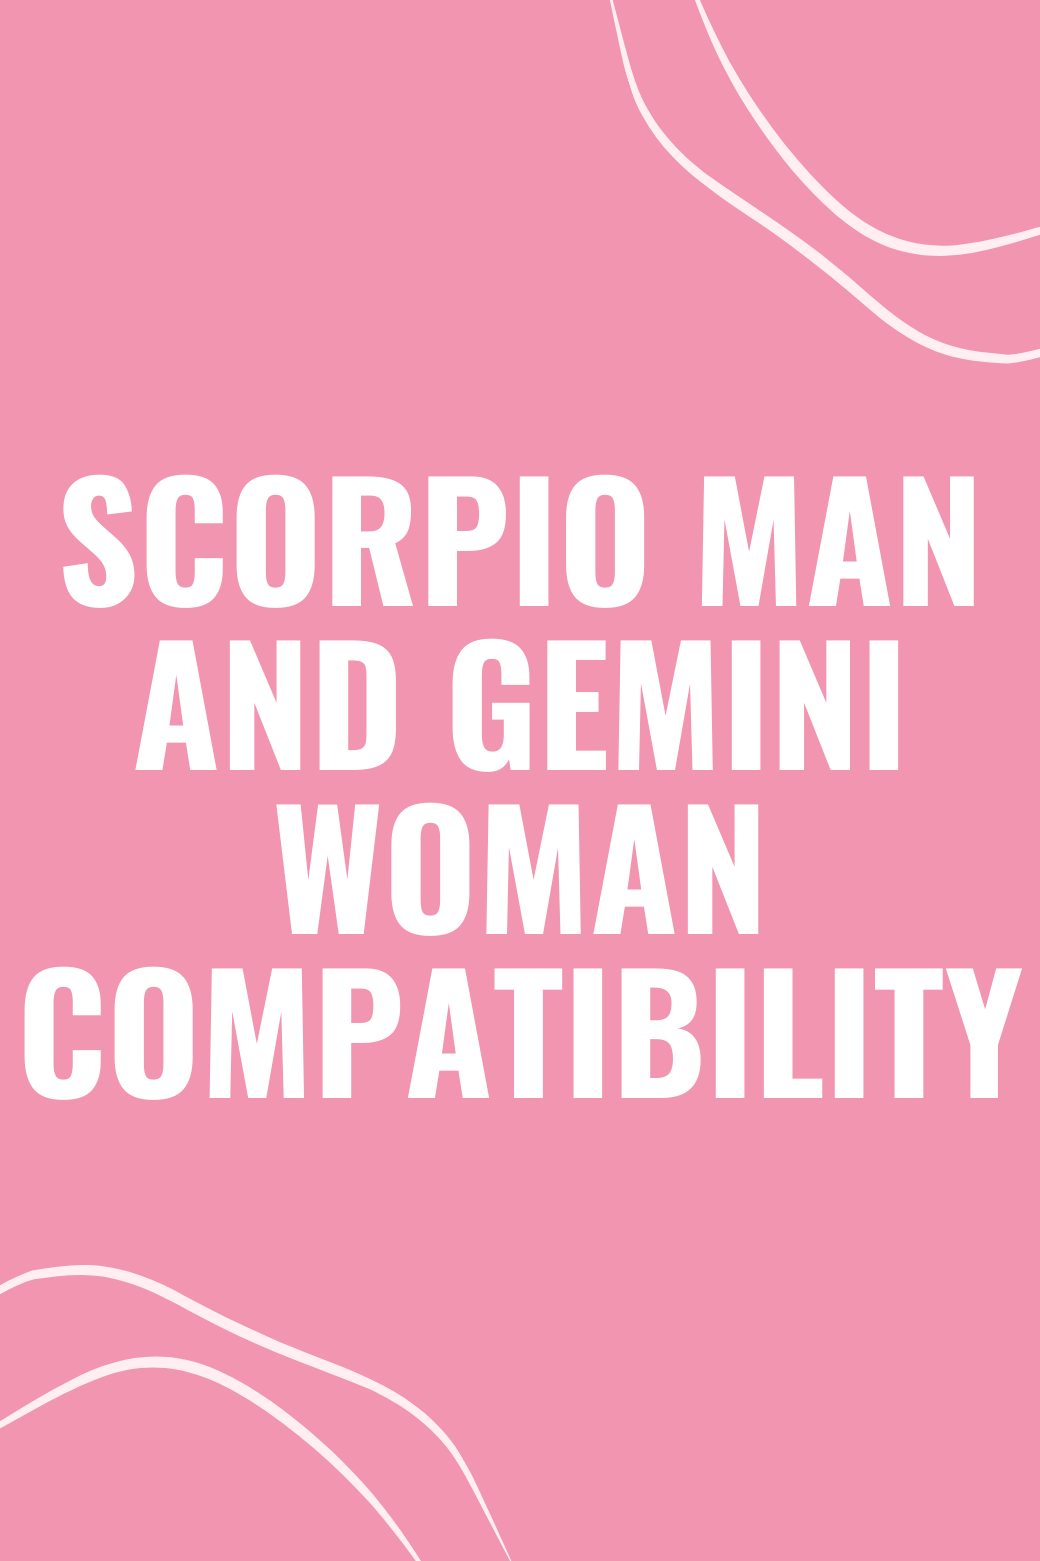 Scorpio Man and Gemini Woman Compatibility